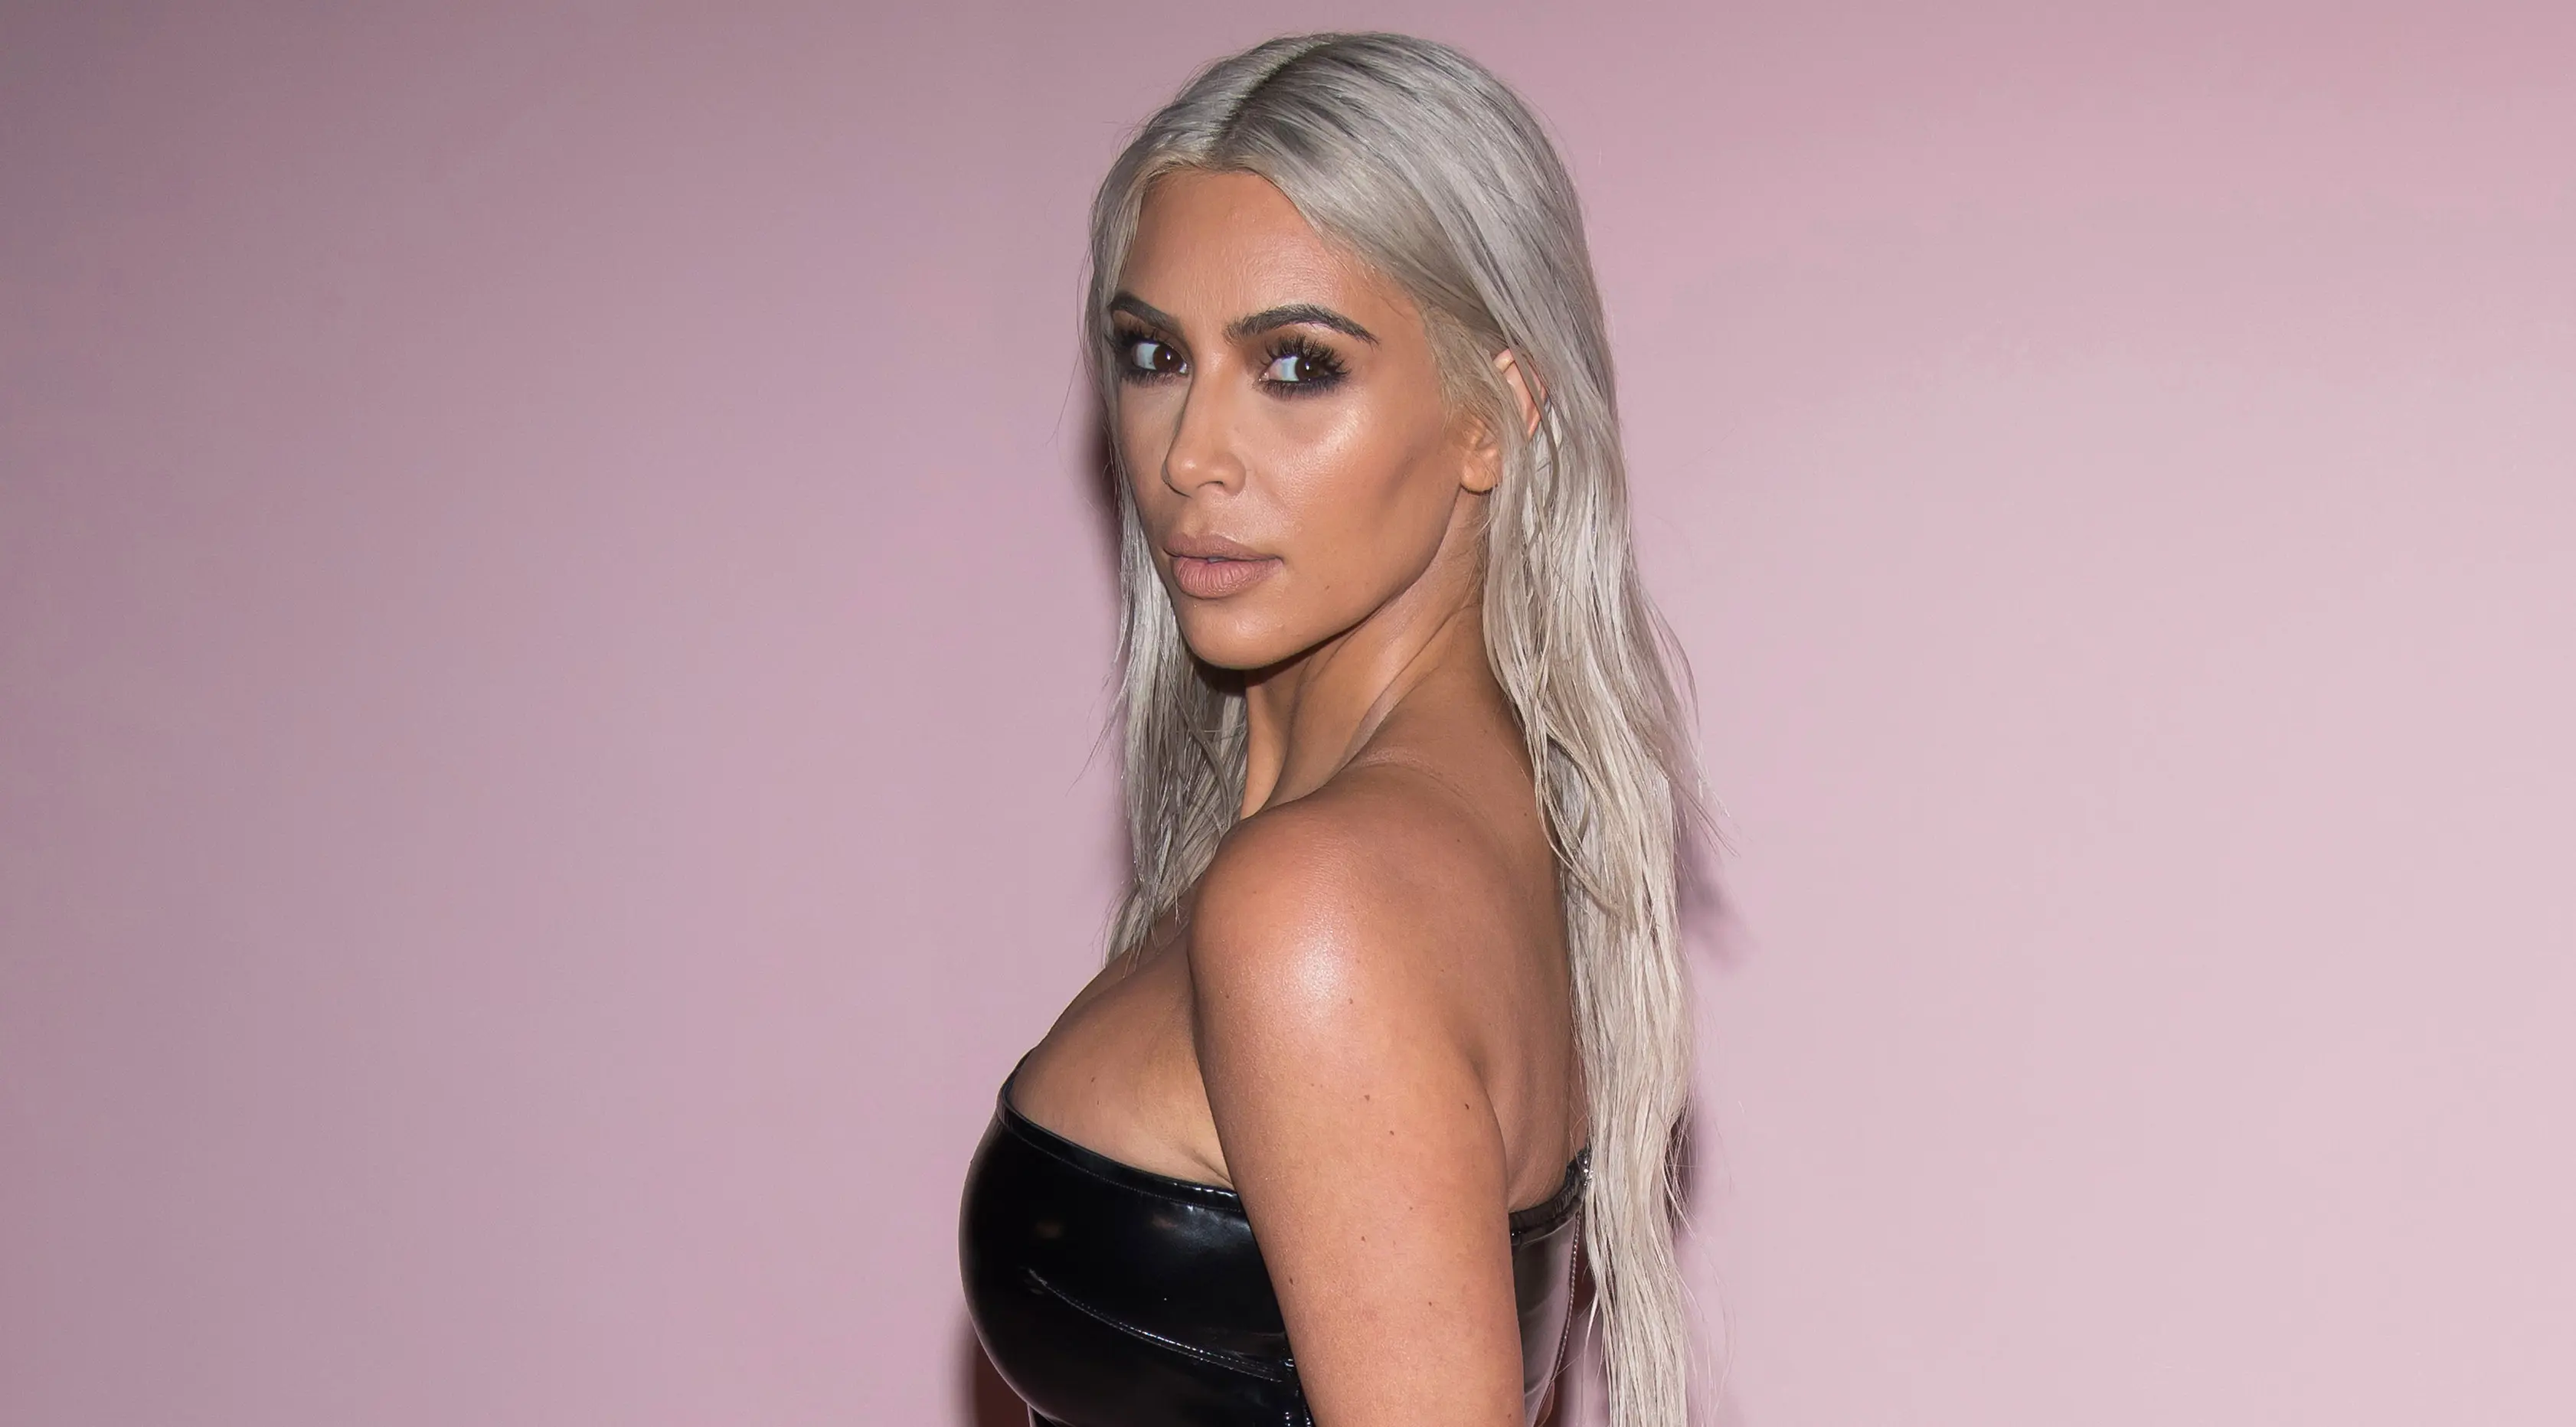 Bintang reality TV dan sosialita, Kim Kardashian tampil berbeda pada fashion show koleksi spring summer 2018 milik Tom Ford di New York Fashion Week, Rabu 6 September 2017. Kim membuat kejutan dengan rambut baru. (Charles Sykes/Invision/AP)